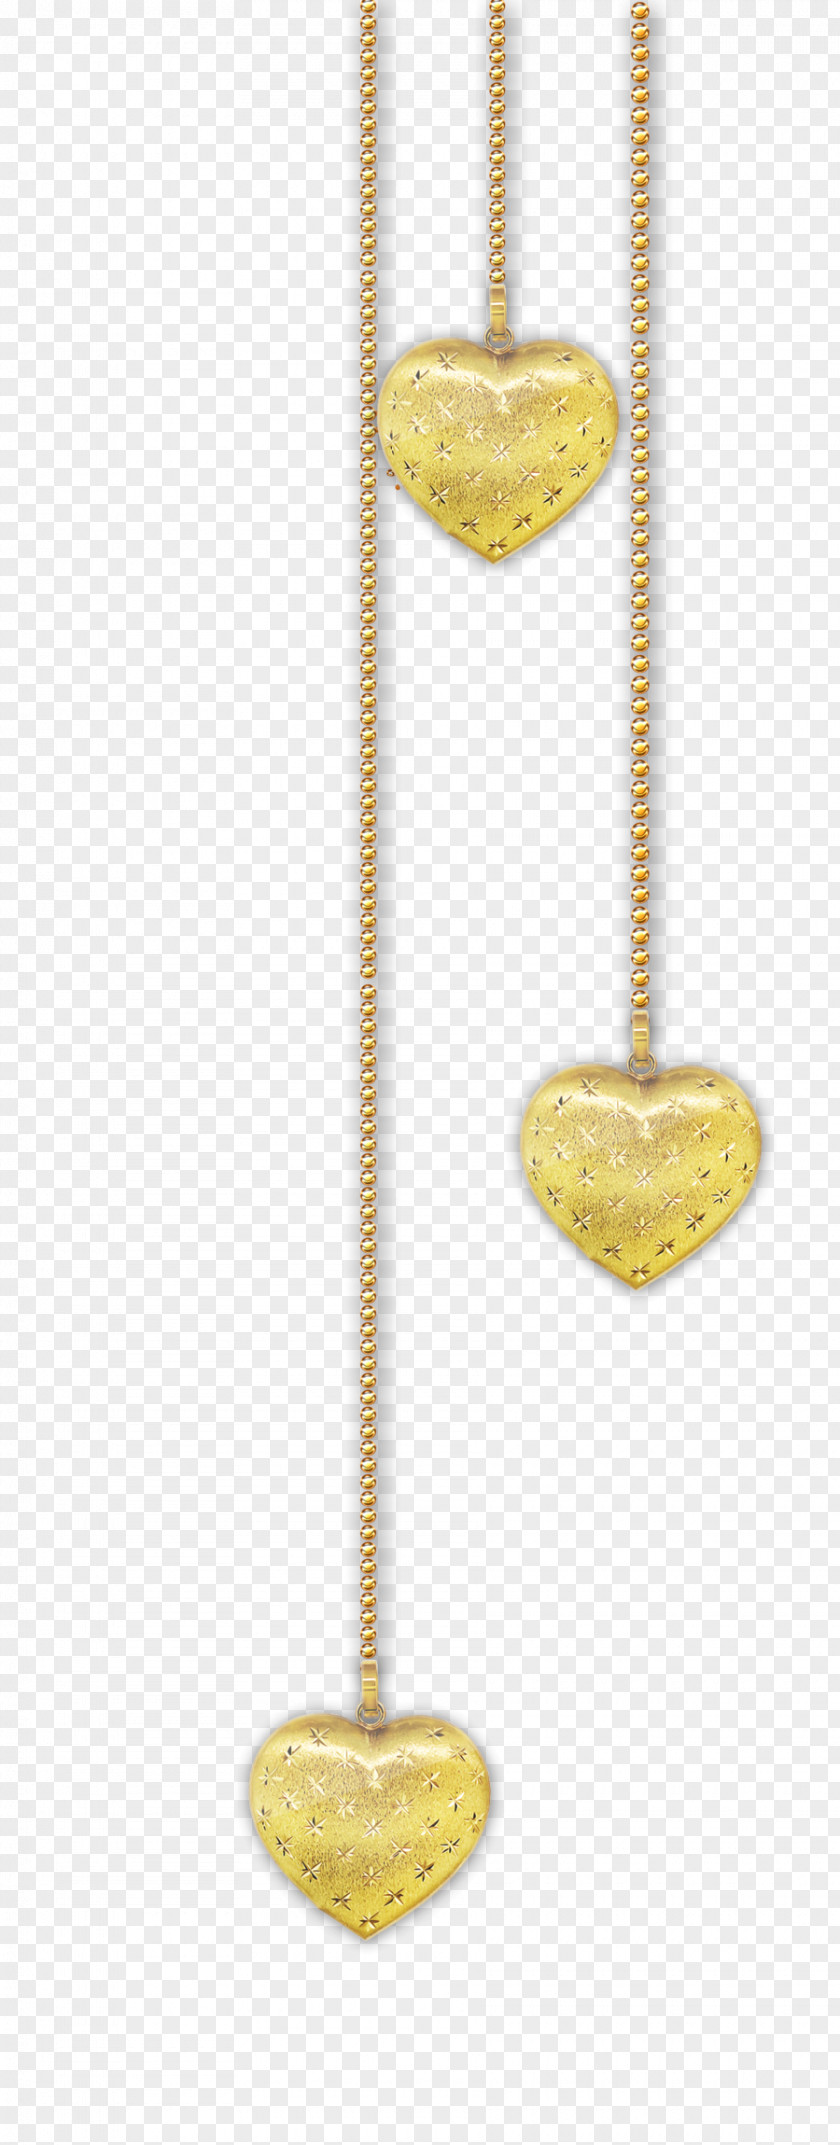 Heart Gold Clip Art PNG